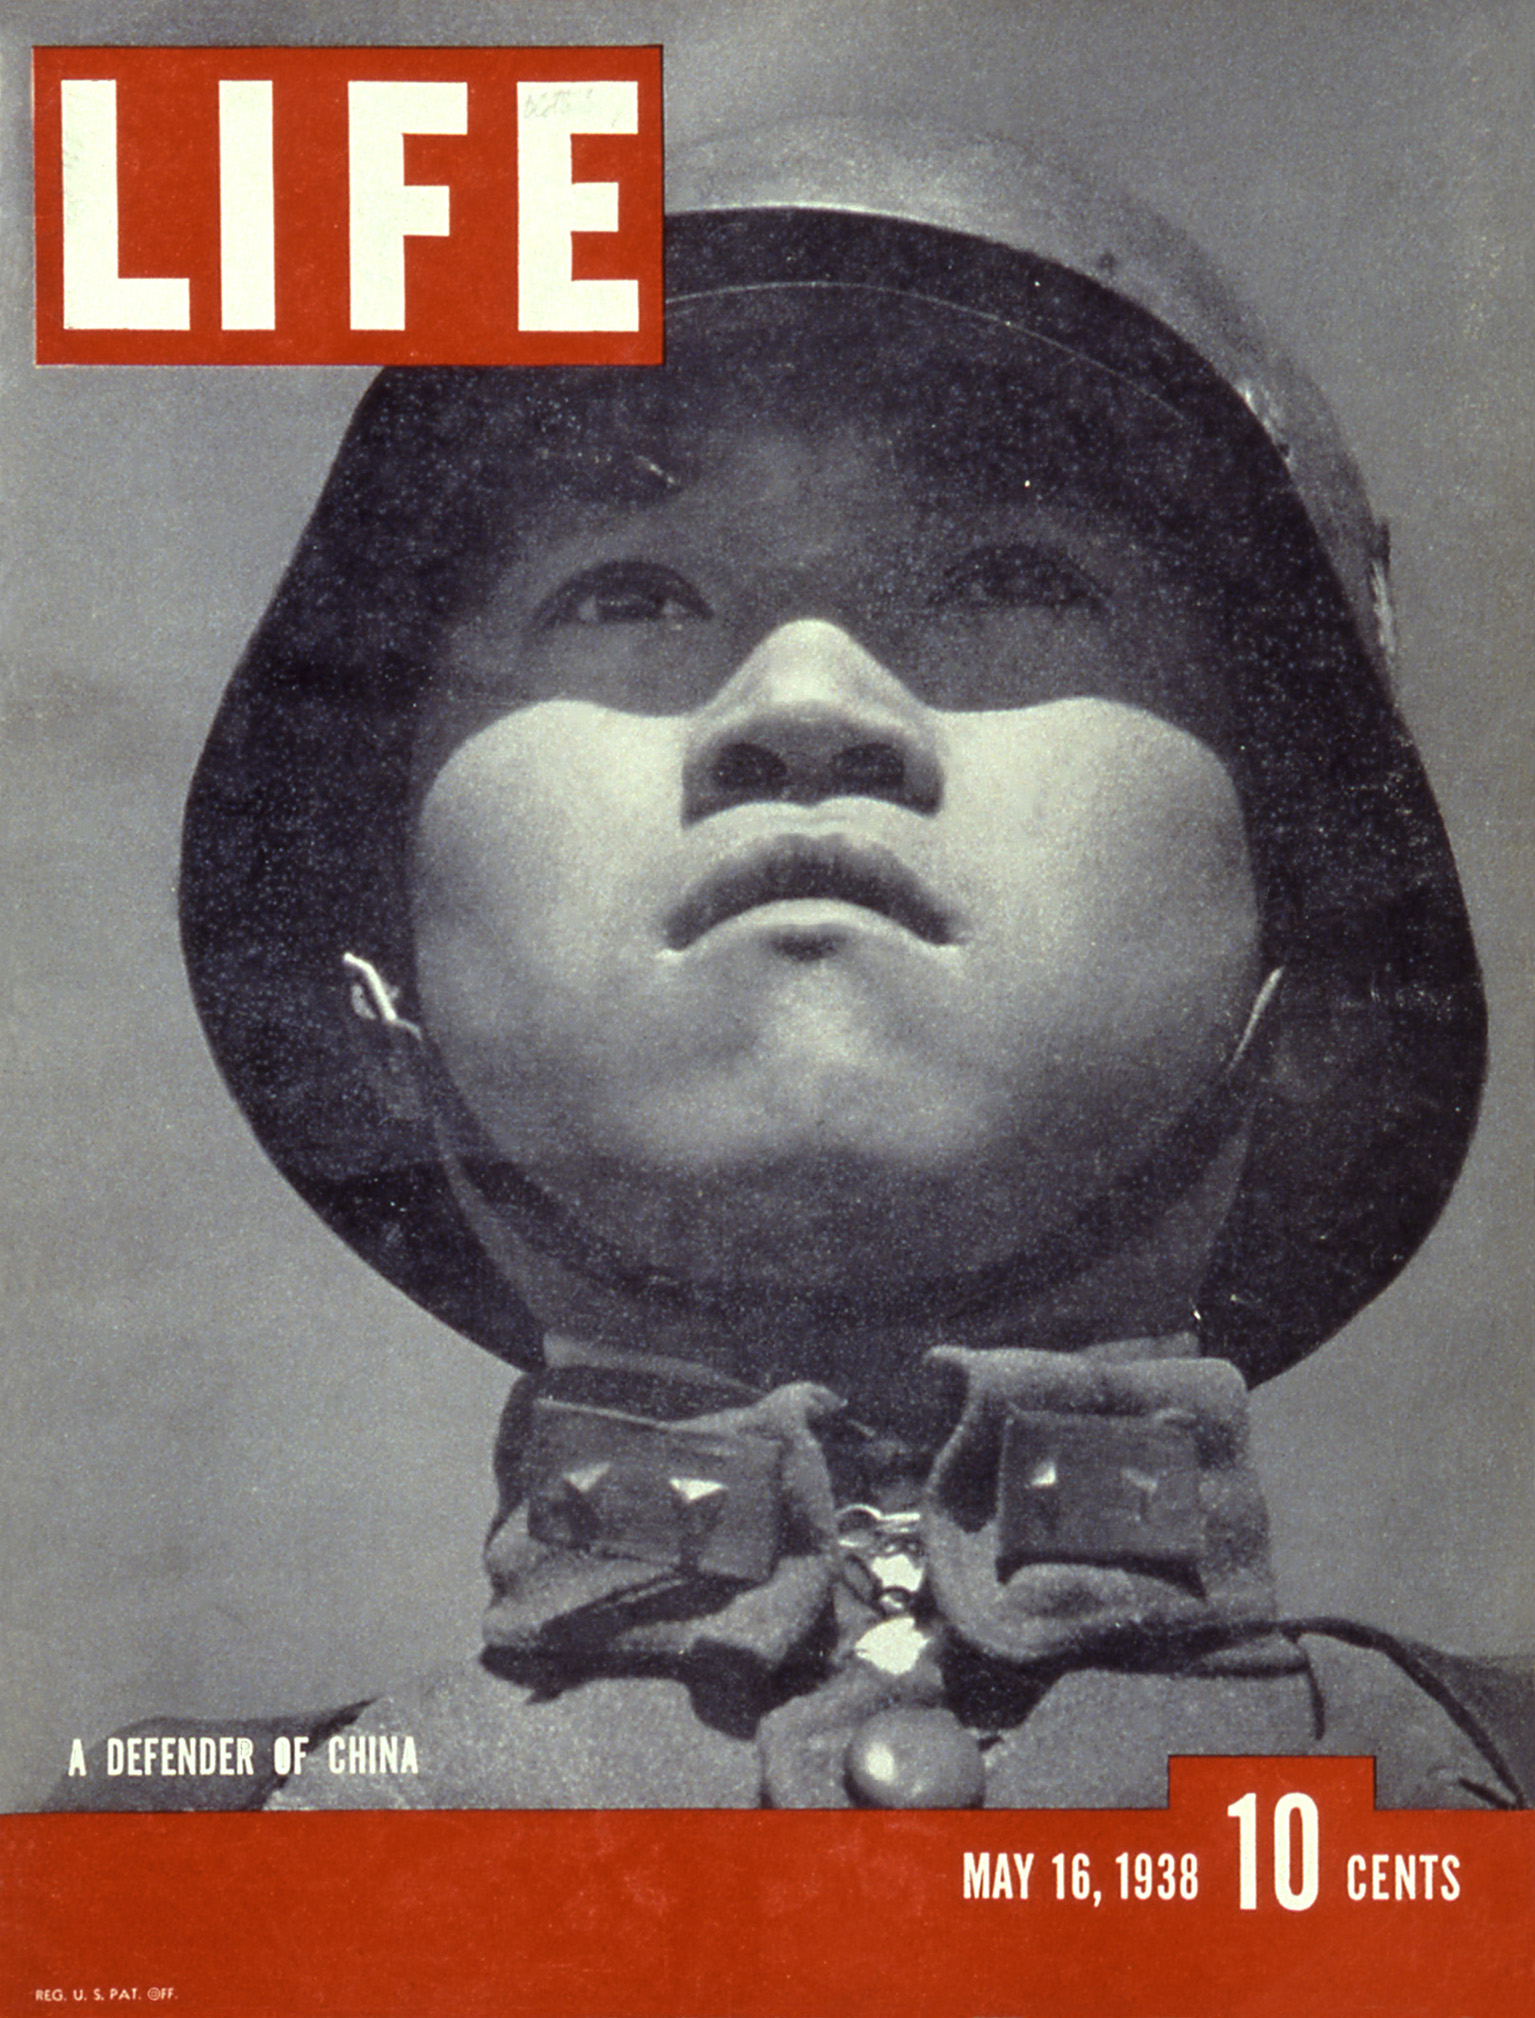 LIFE (May 16, 1938)